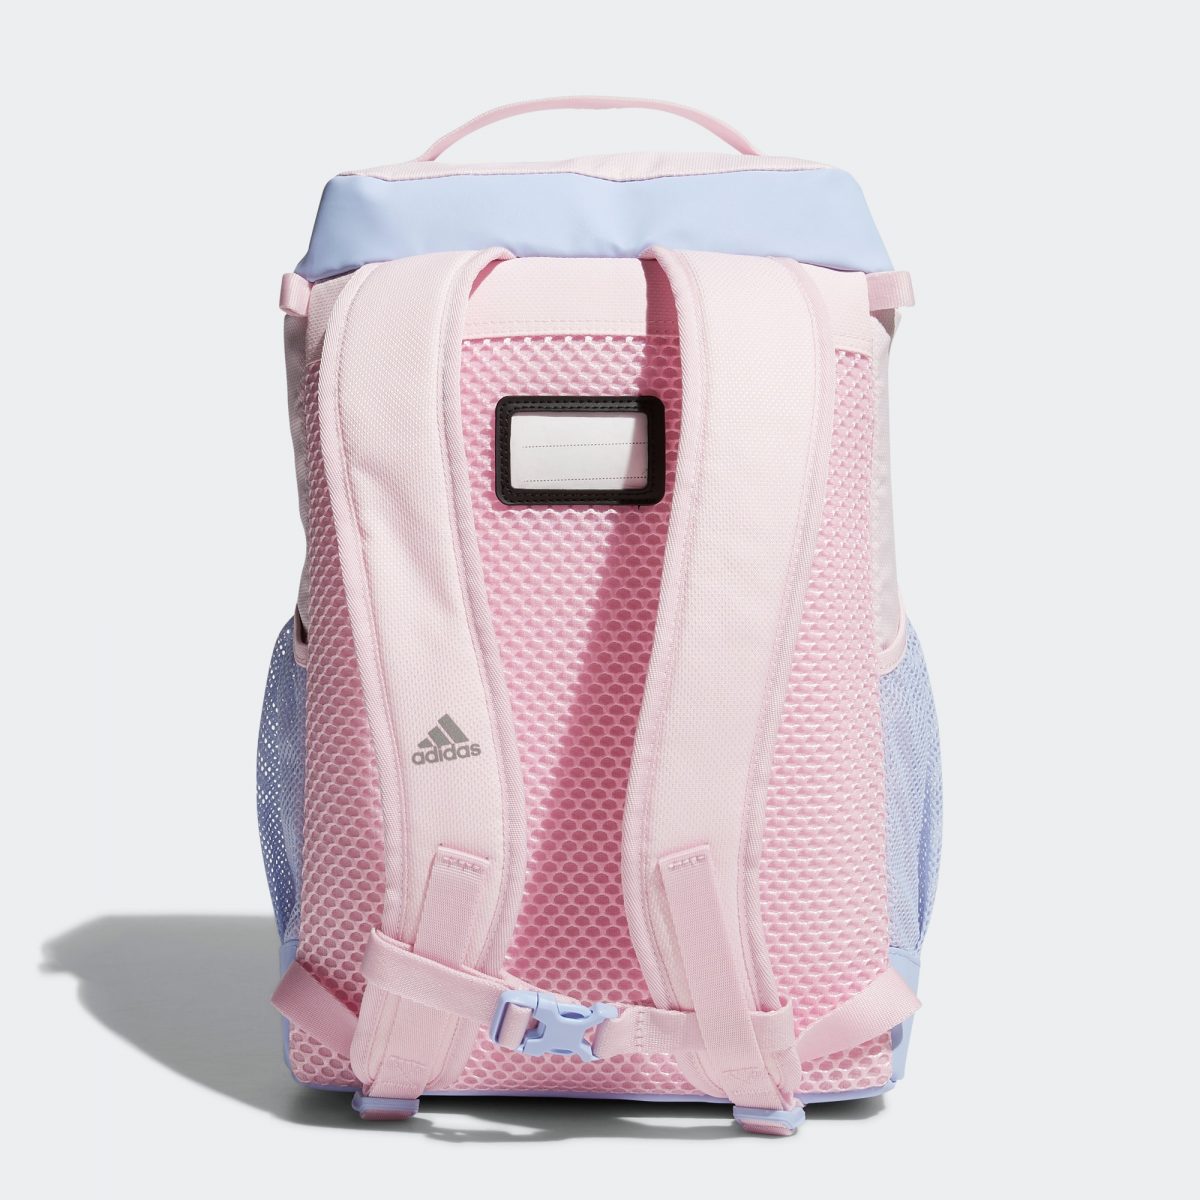 Детская сумка adidas ENDURANCE PACKING SYSTEM фотография